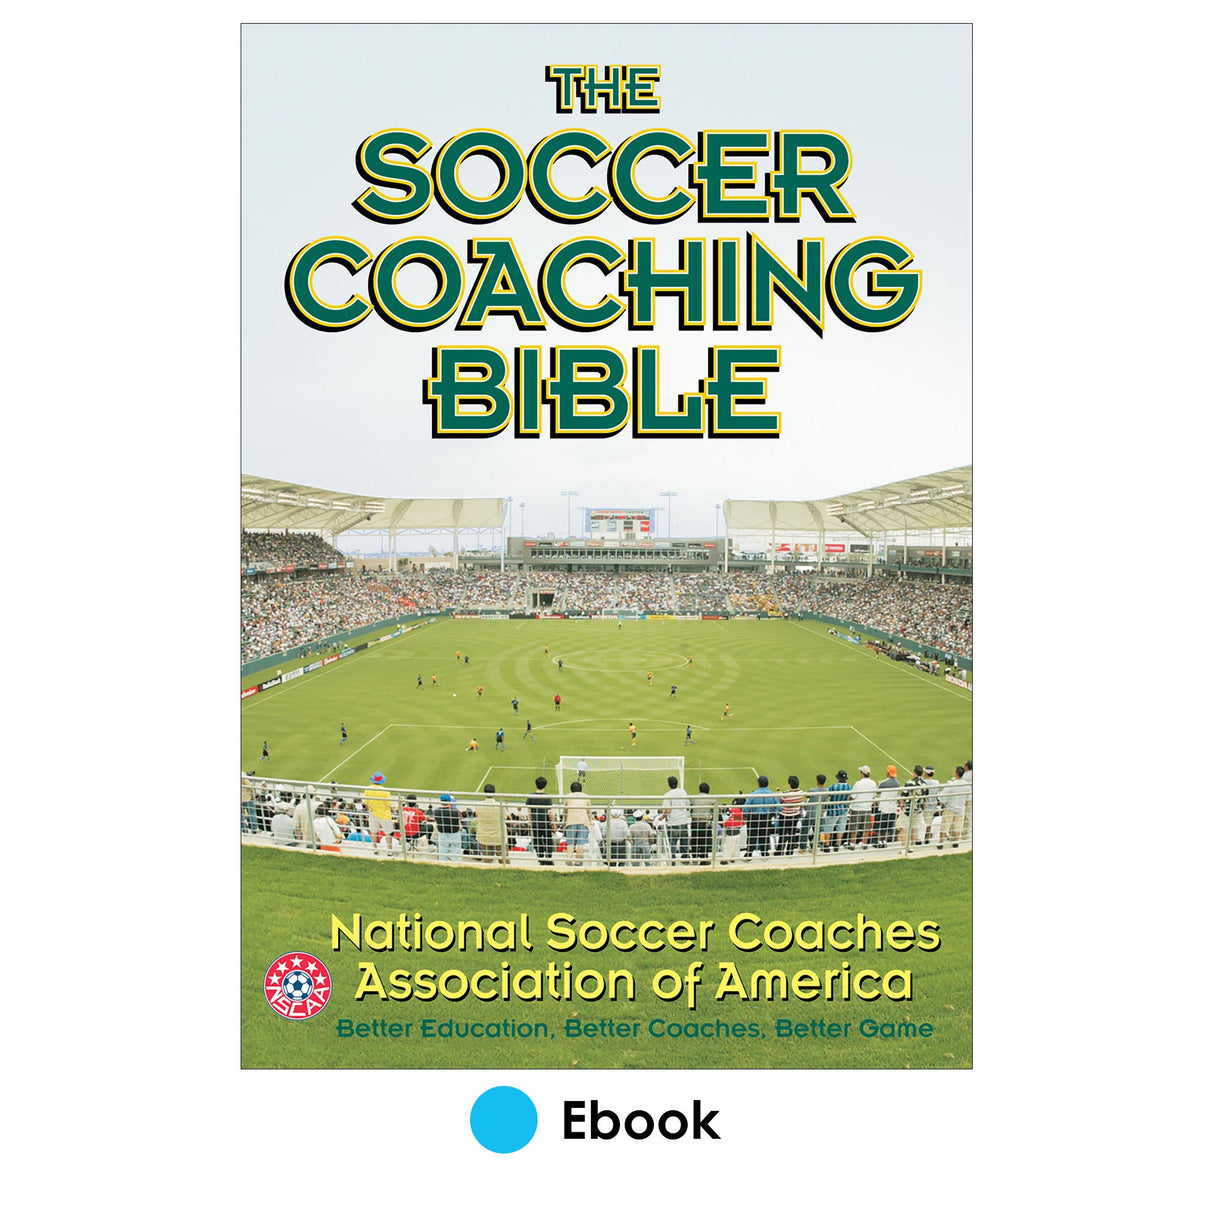 Soccer Coaching Bible PDF, The